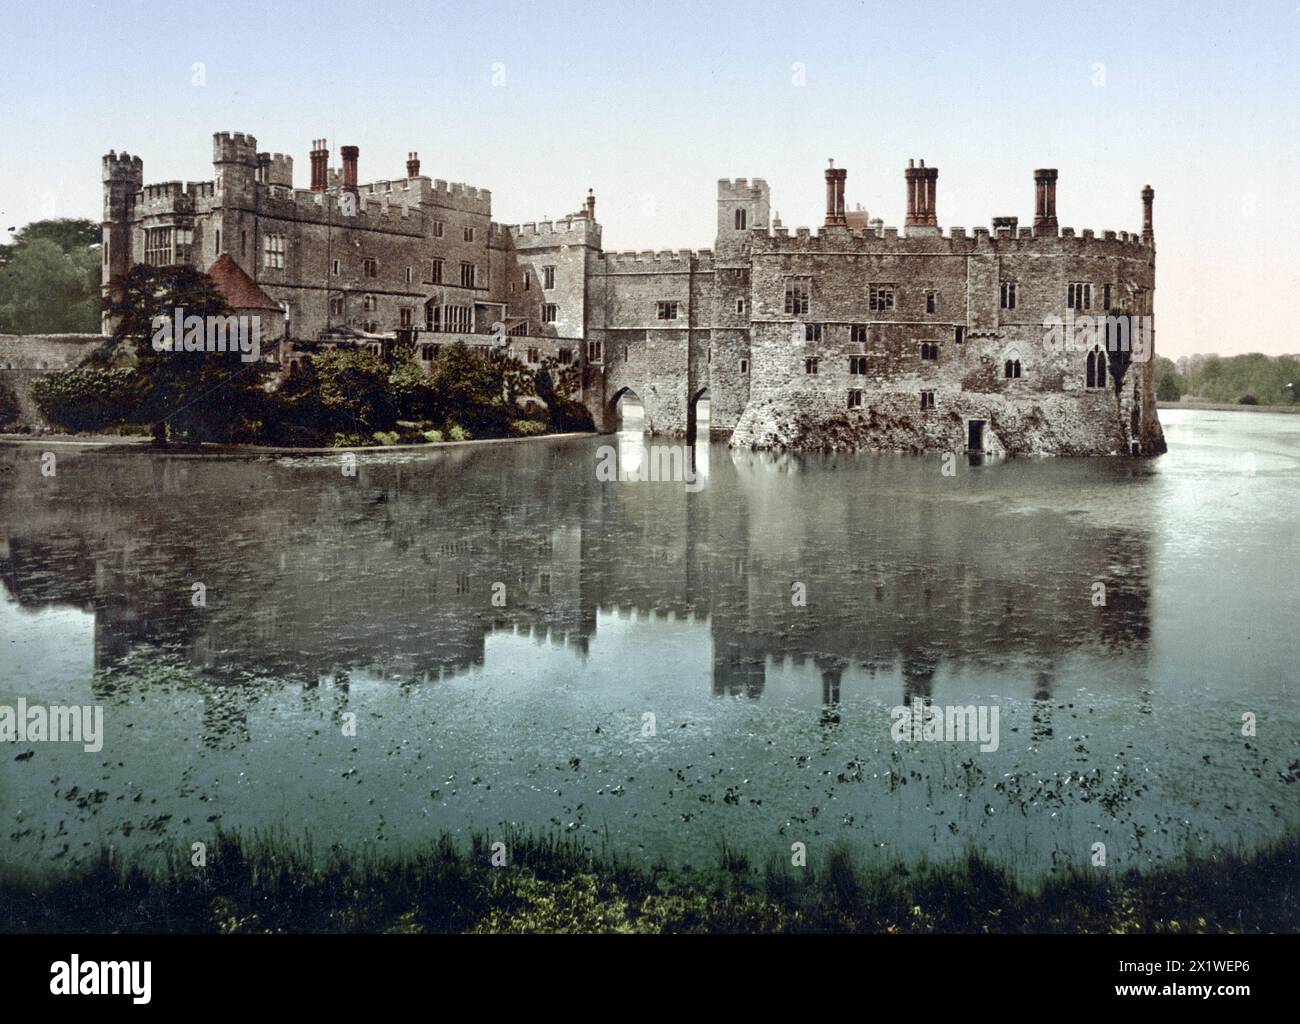 Wasserschloss Leeds Castle, südöstlich von Maidstone, Grafschaft Kent, Inghilterra, UM 1890, Historisch, digital restaurierte Reproduktion von einer Vorla Foto Stock